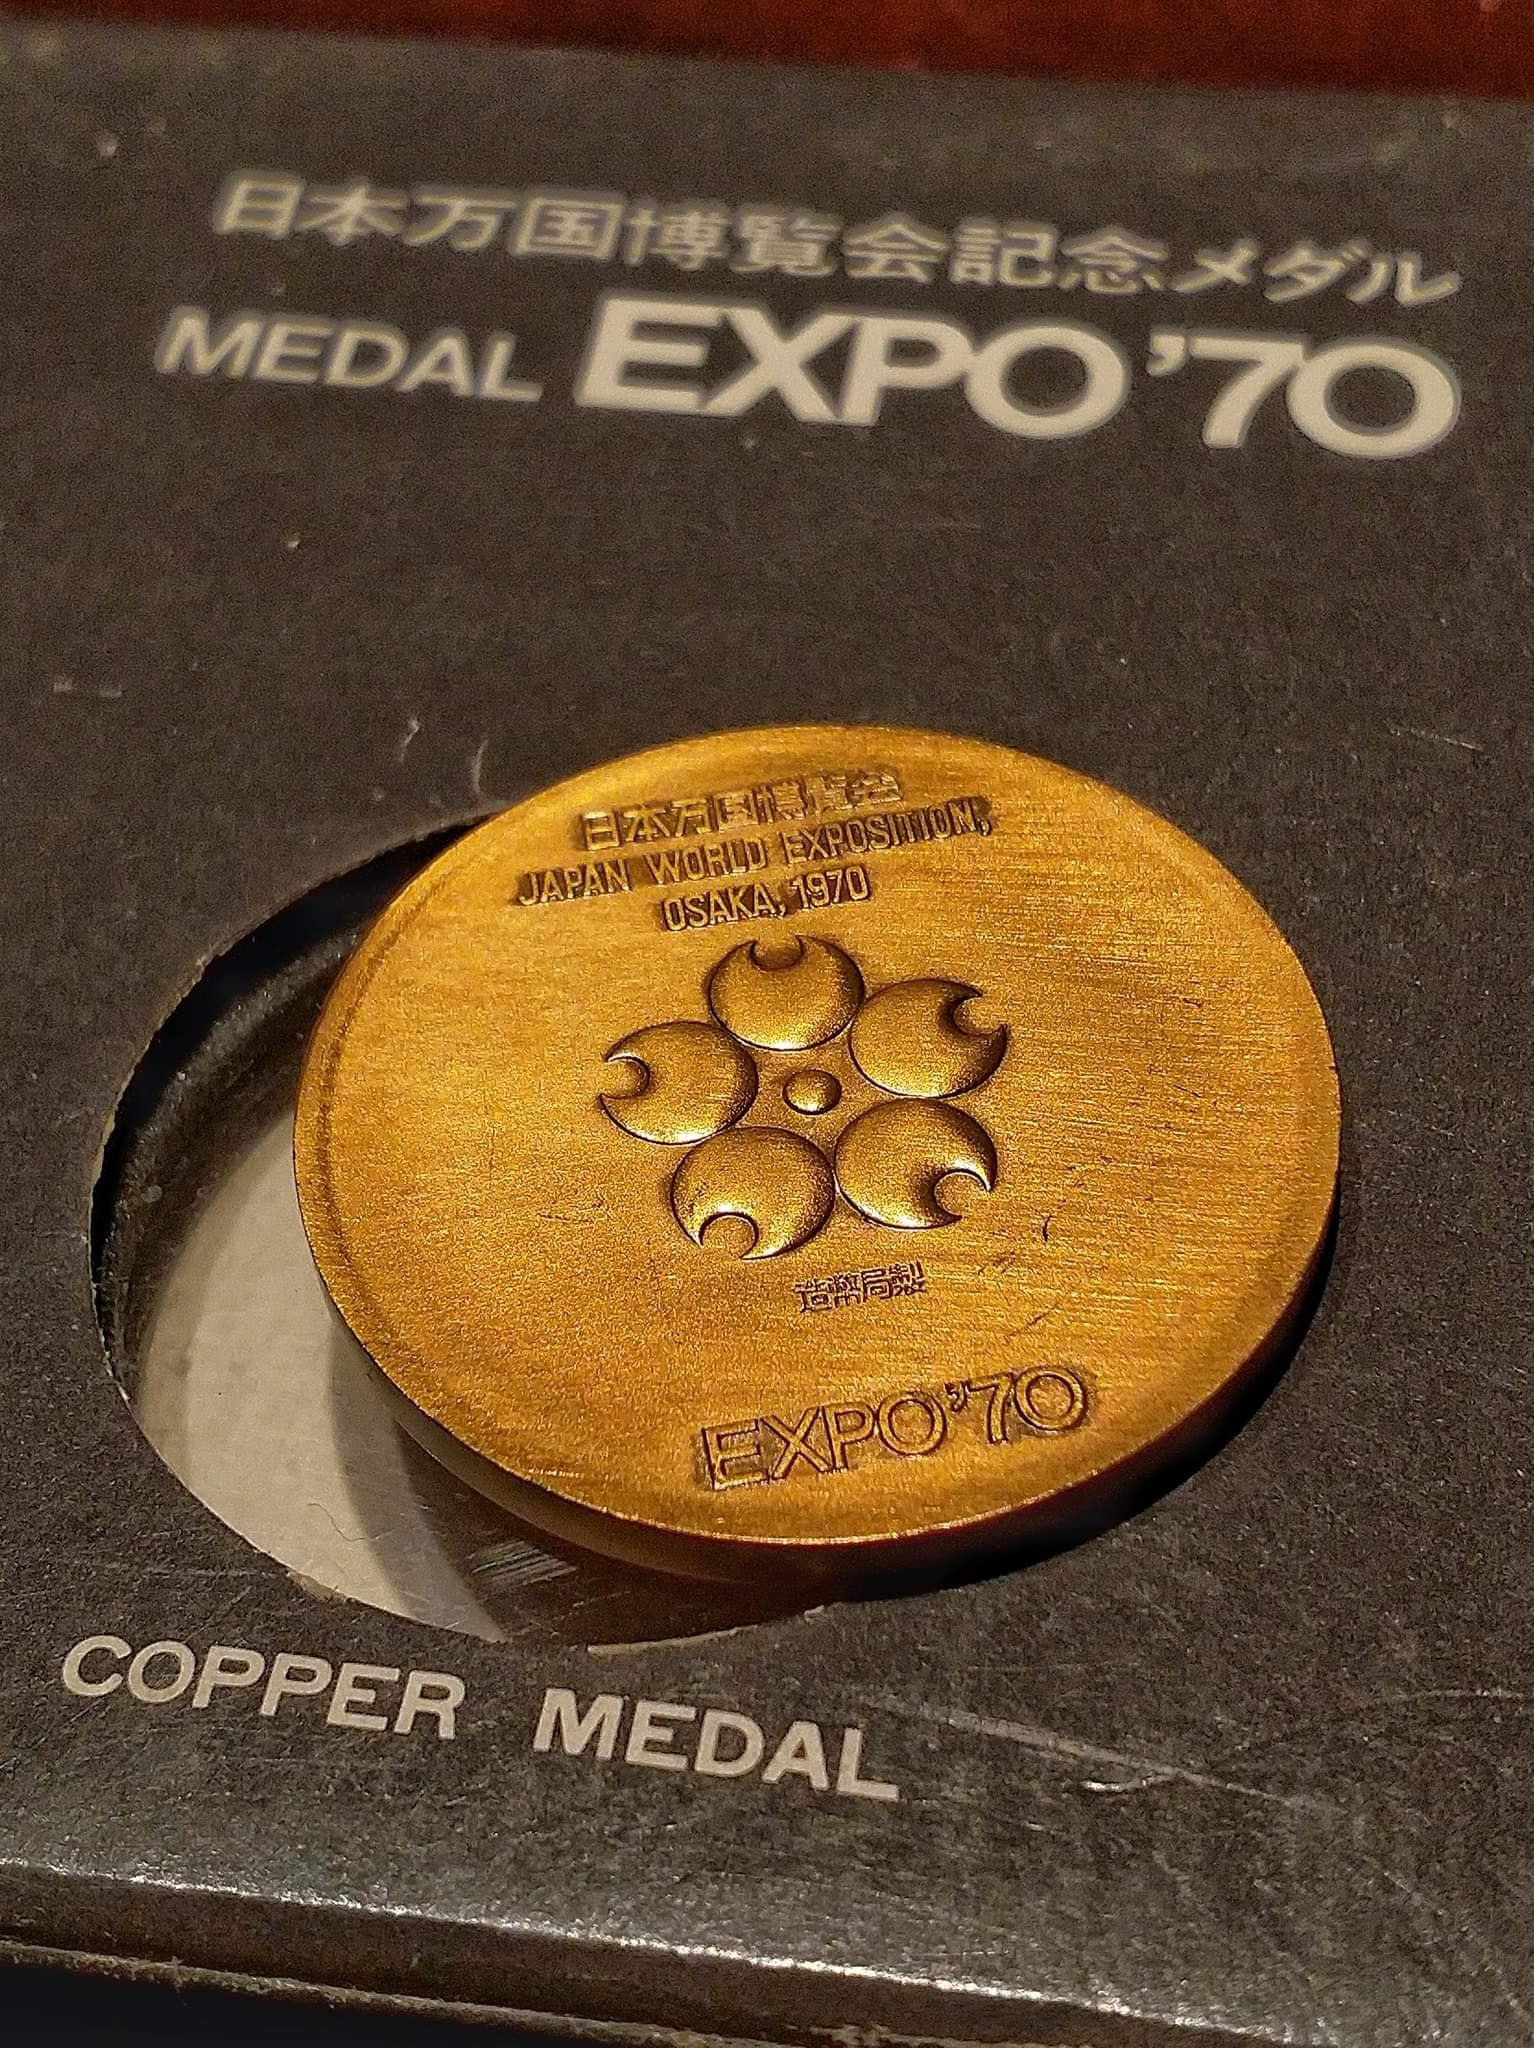 Osaka Expo Medal